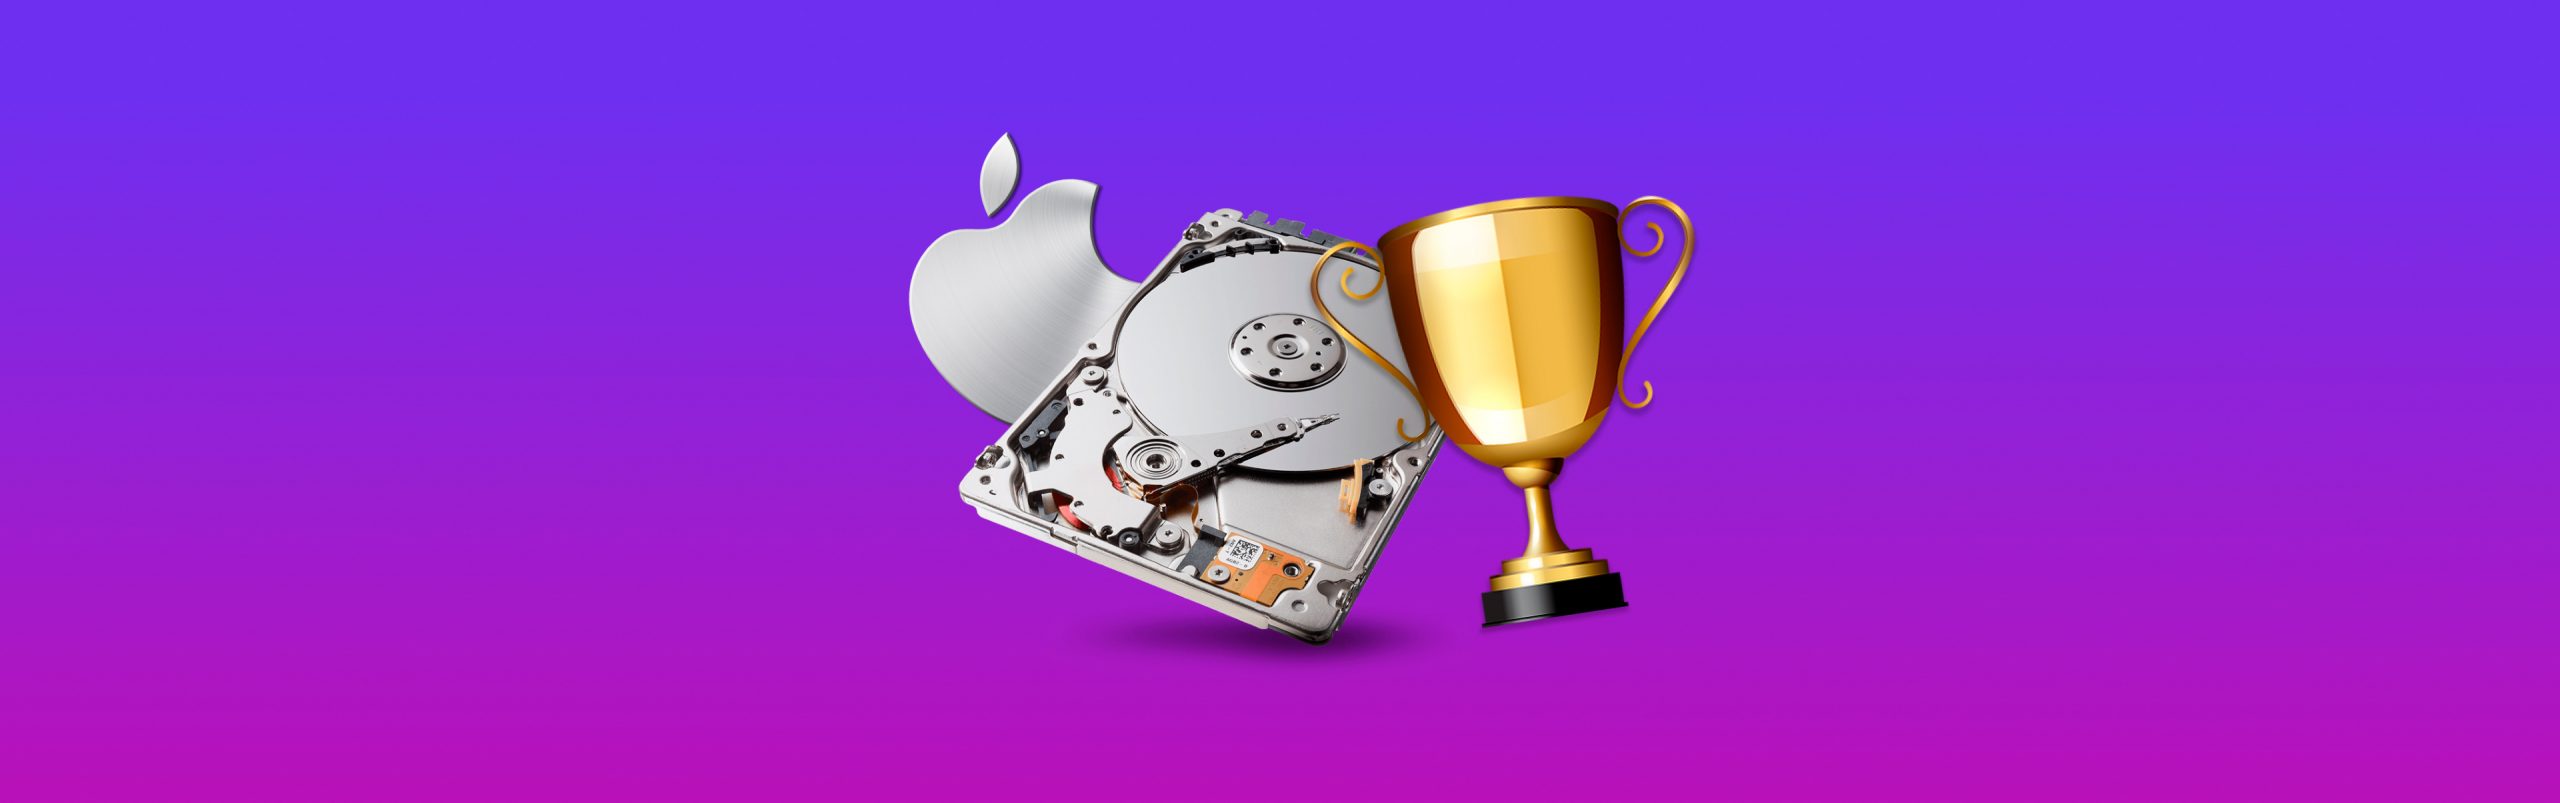 best repair software for mac